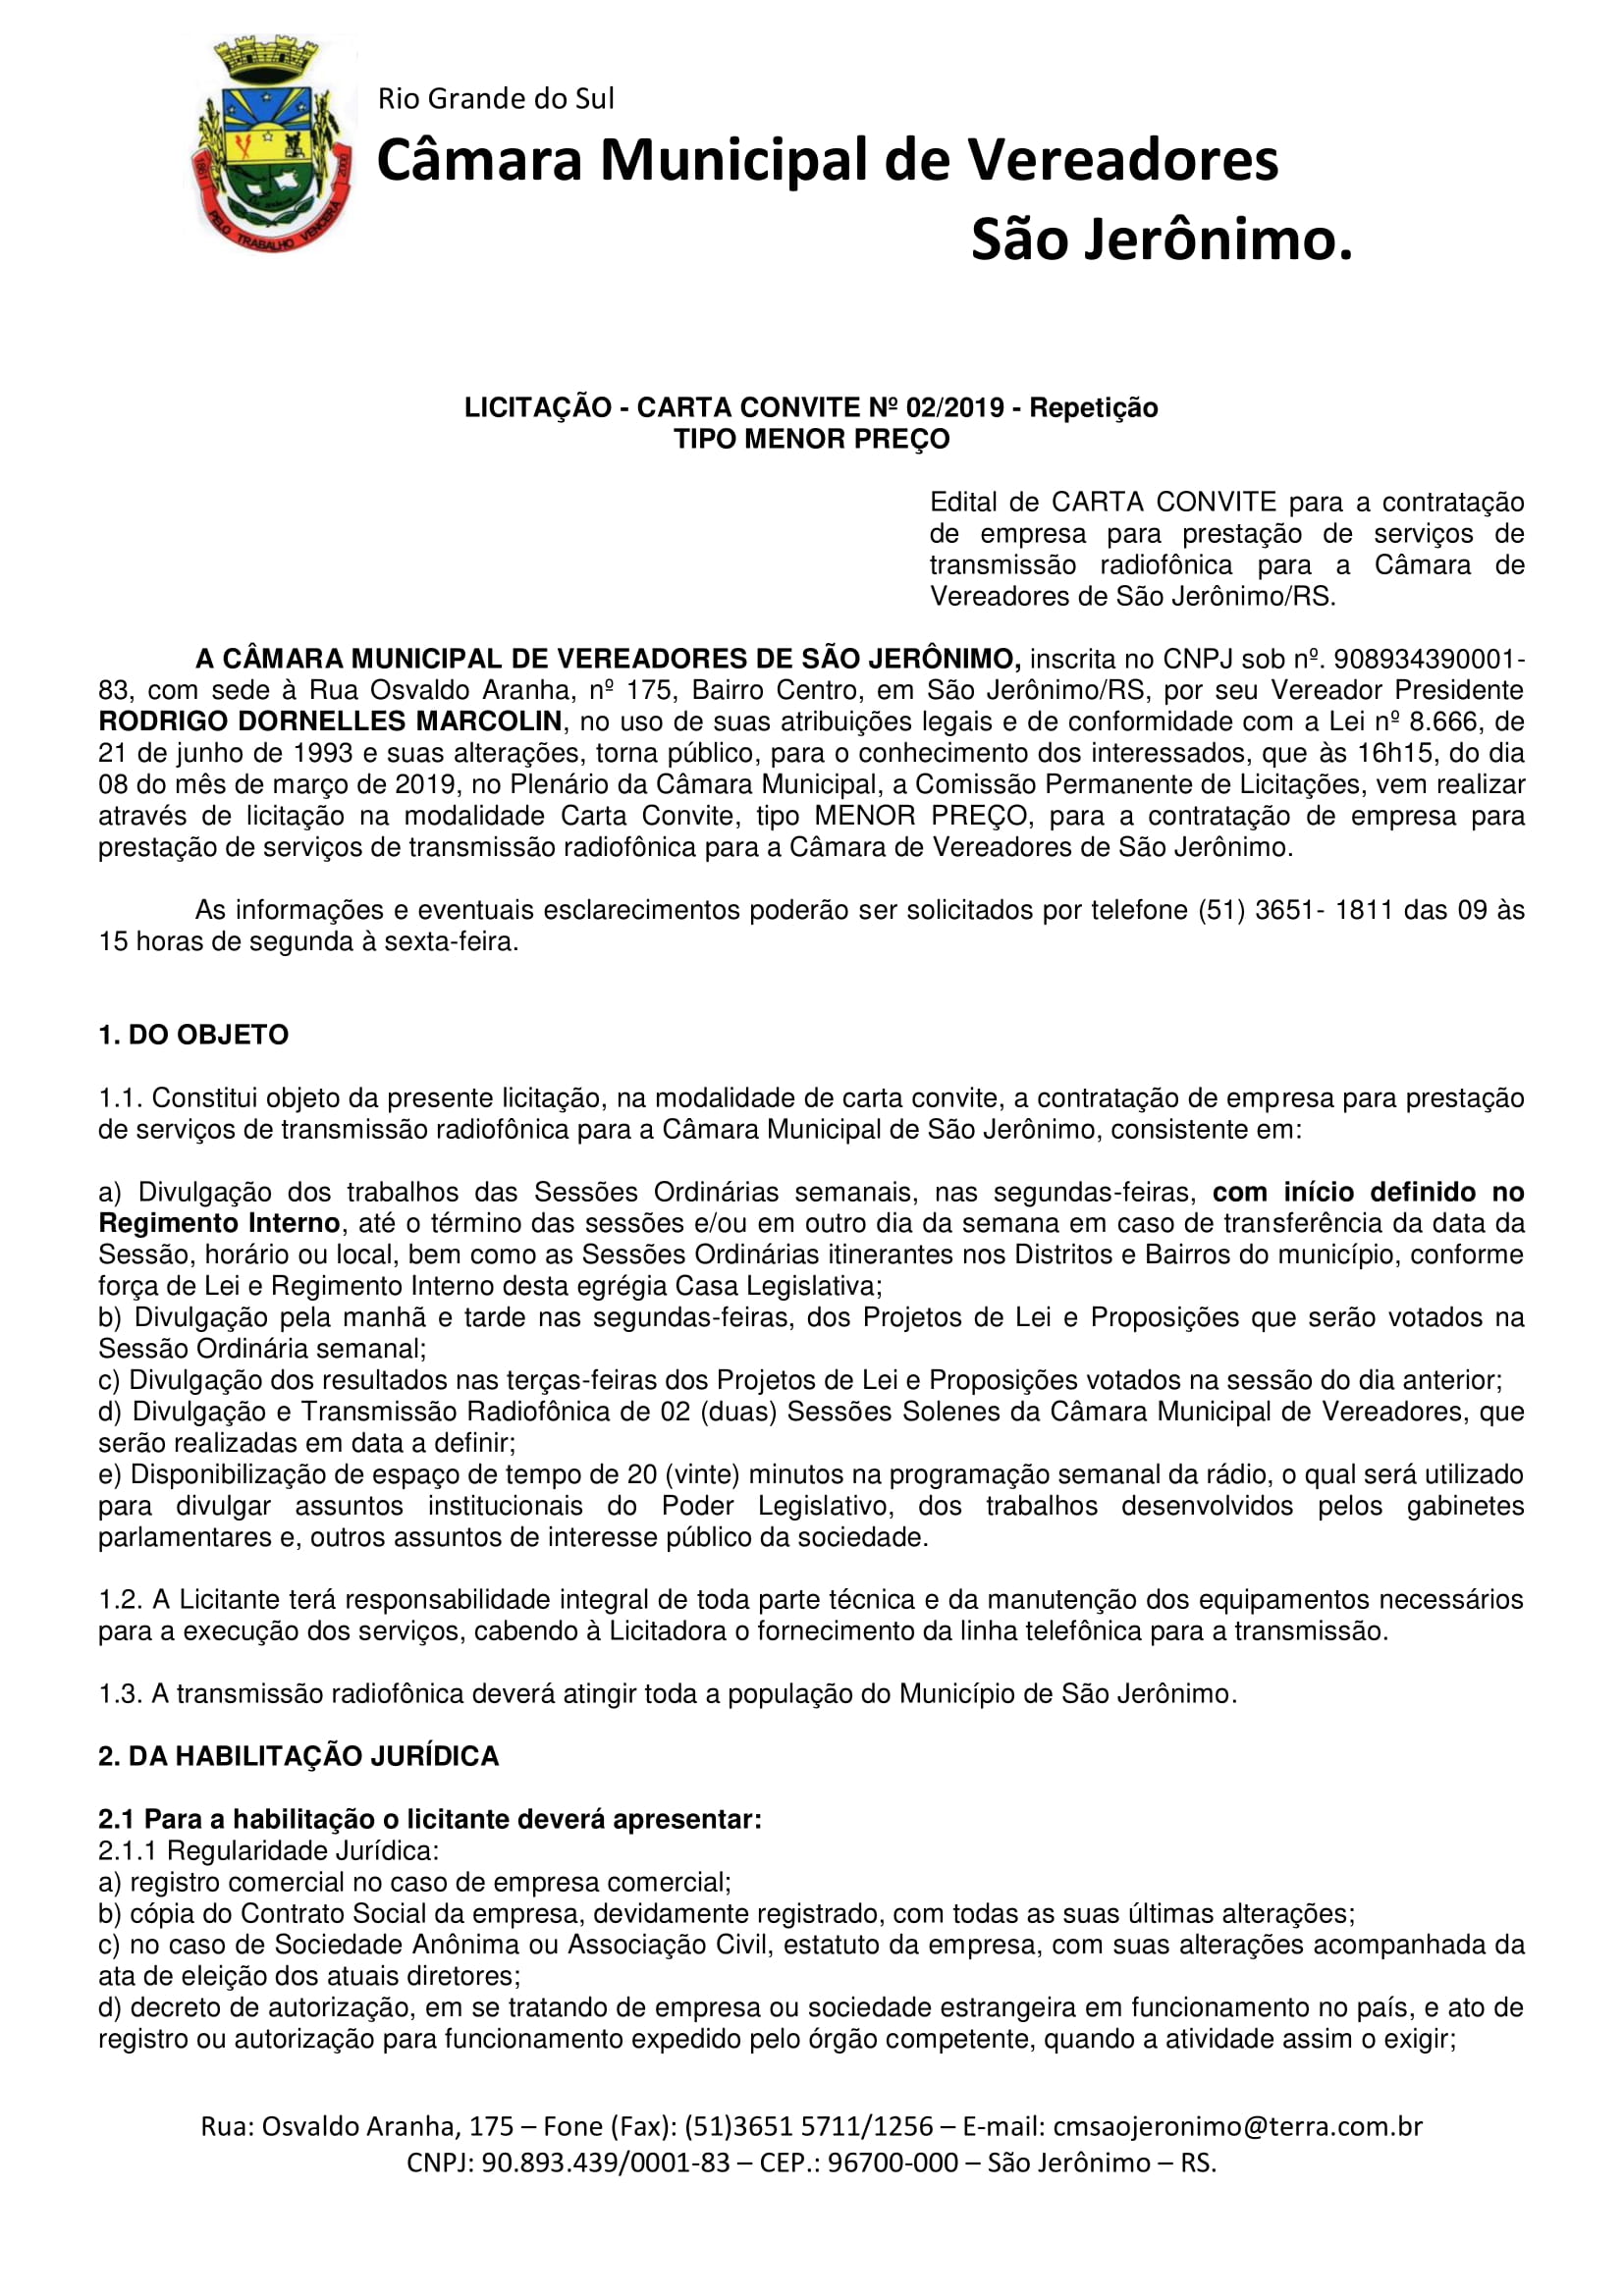 Carta Convite Transmissão Radiofônica repetição 02.2019